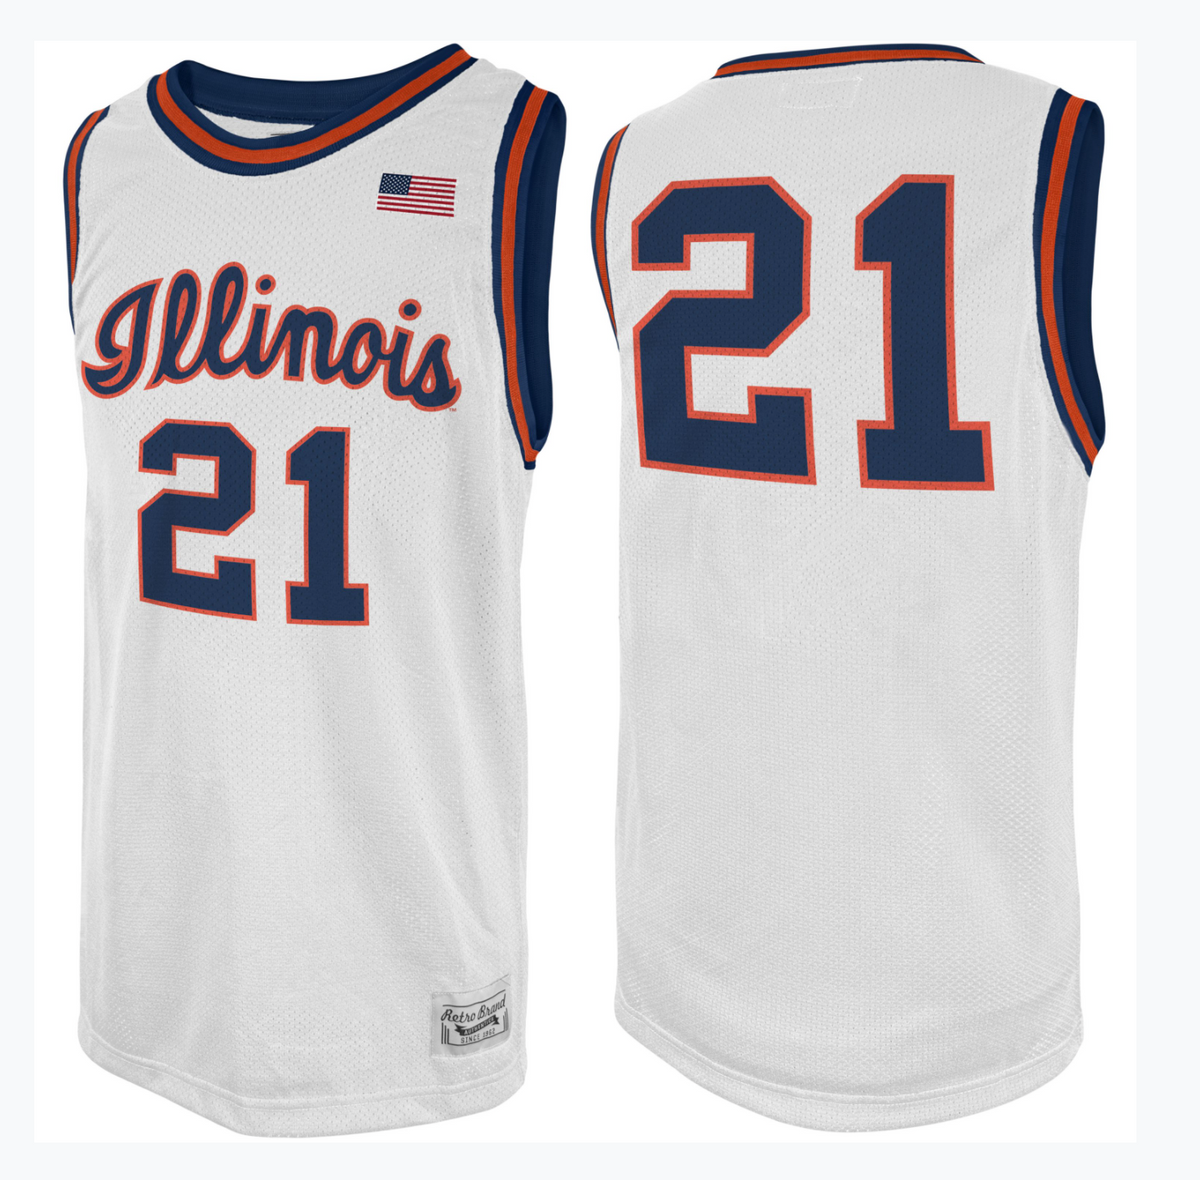 University of Illinois Fighting Illini Men's Basketball #1 Retro Miniature  Sports Jersey (Orange) 2023